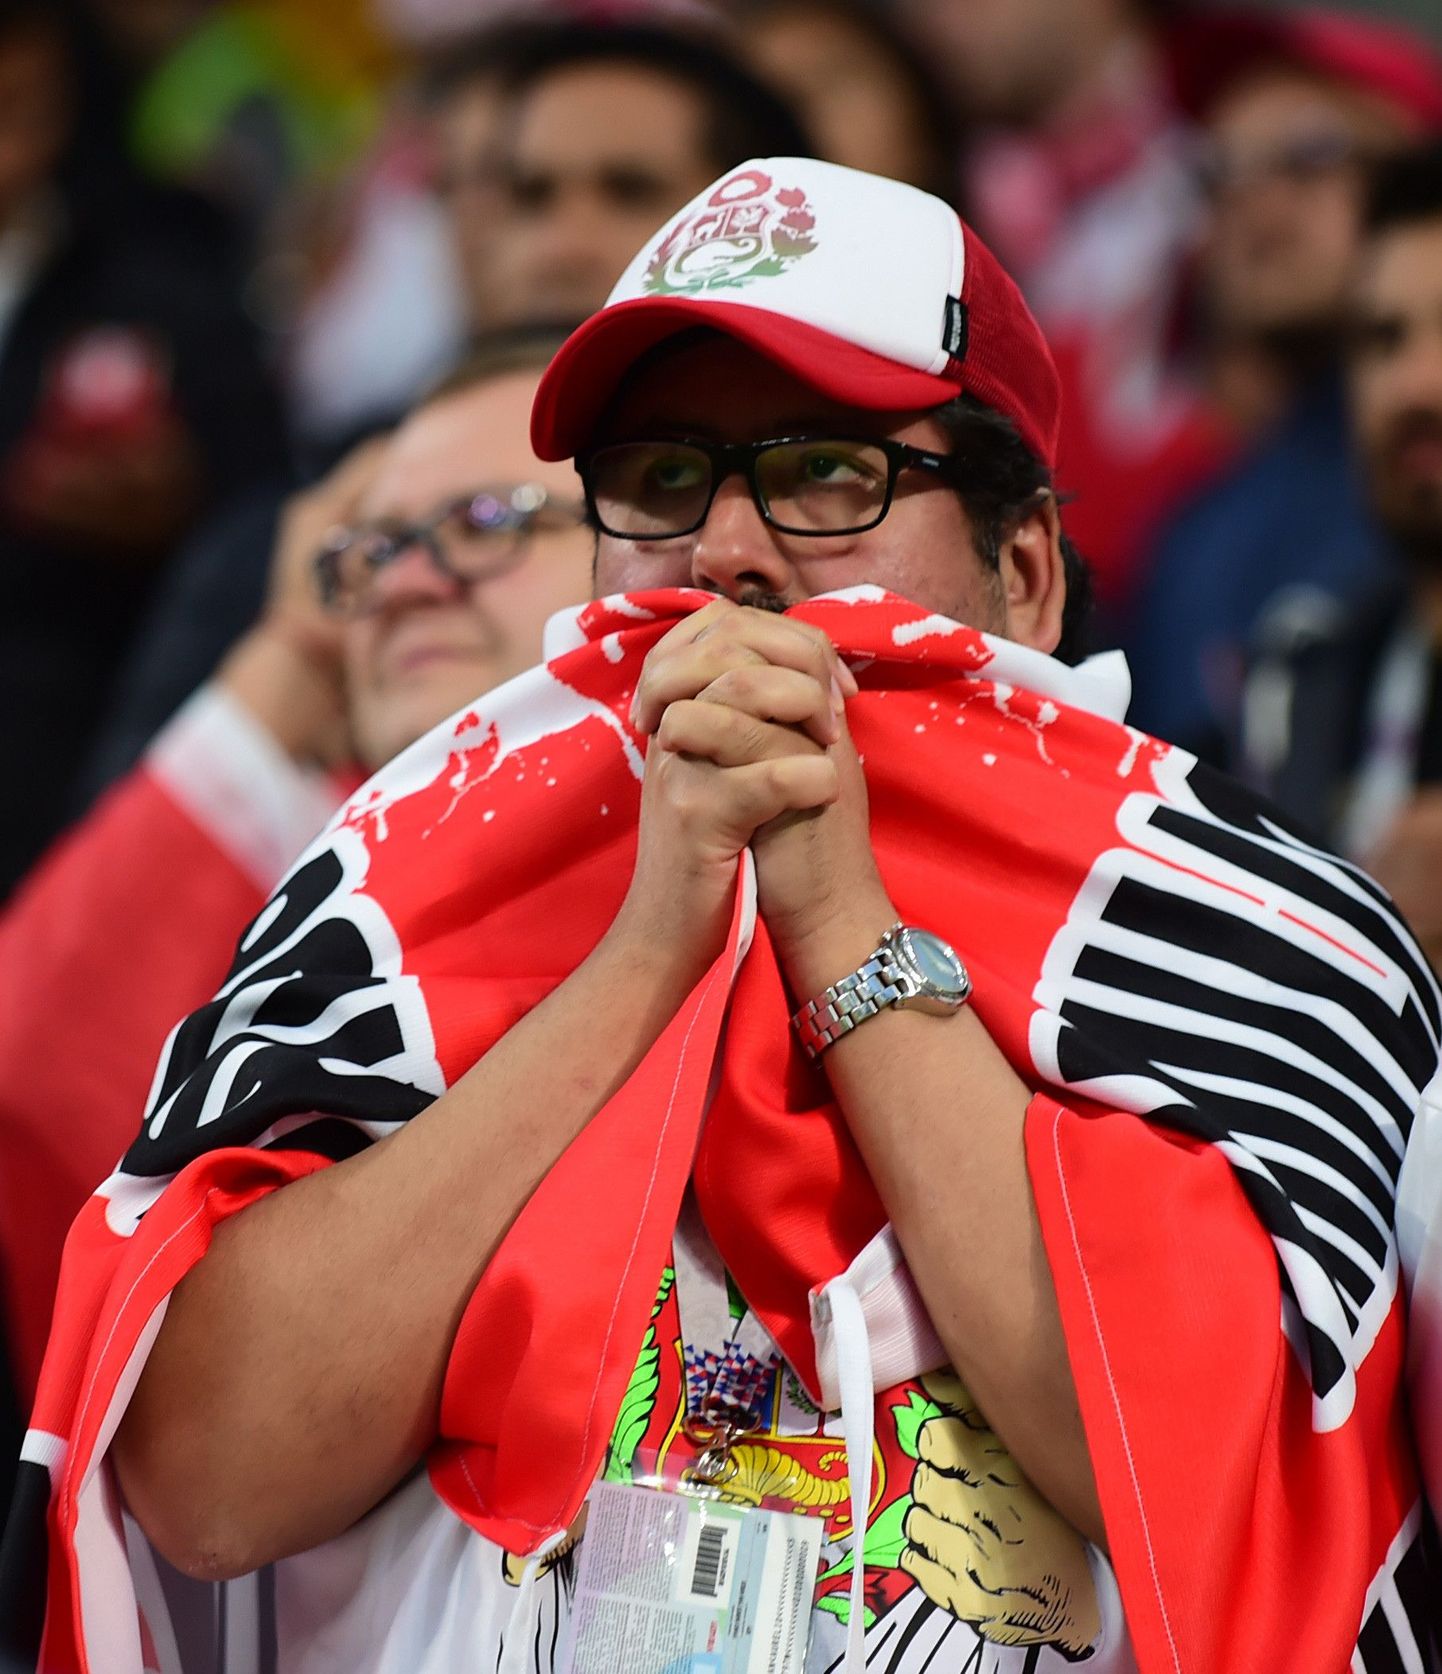 Peruu jalgpallikoondise fännid pärast 0:1 kaotust Prantsusmaale, mille tulemusel minetas meeskond lootused 16 parema sekka jõudmiseks.